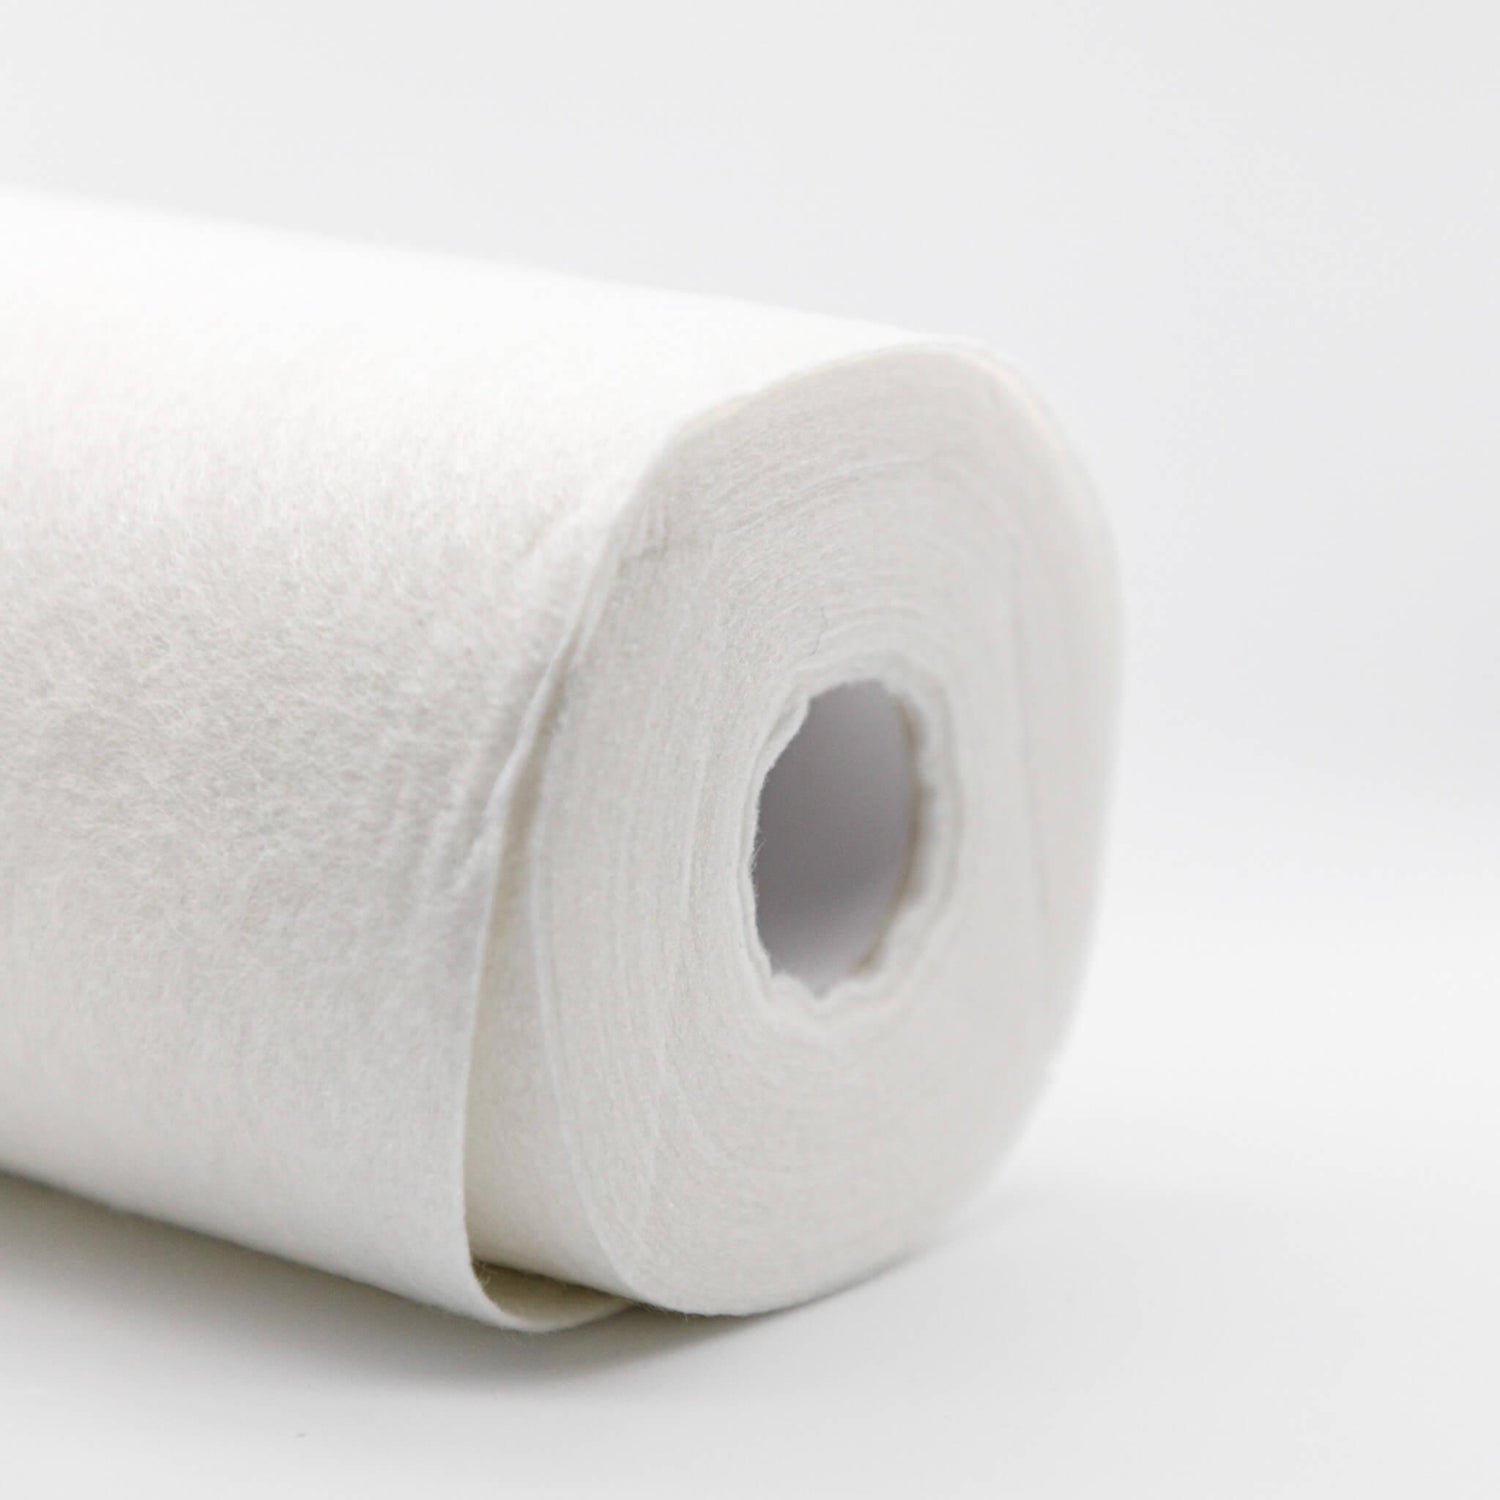 Best Reusable Paper Towels